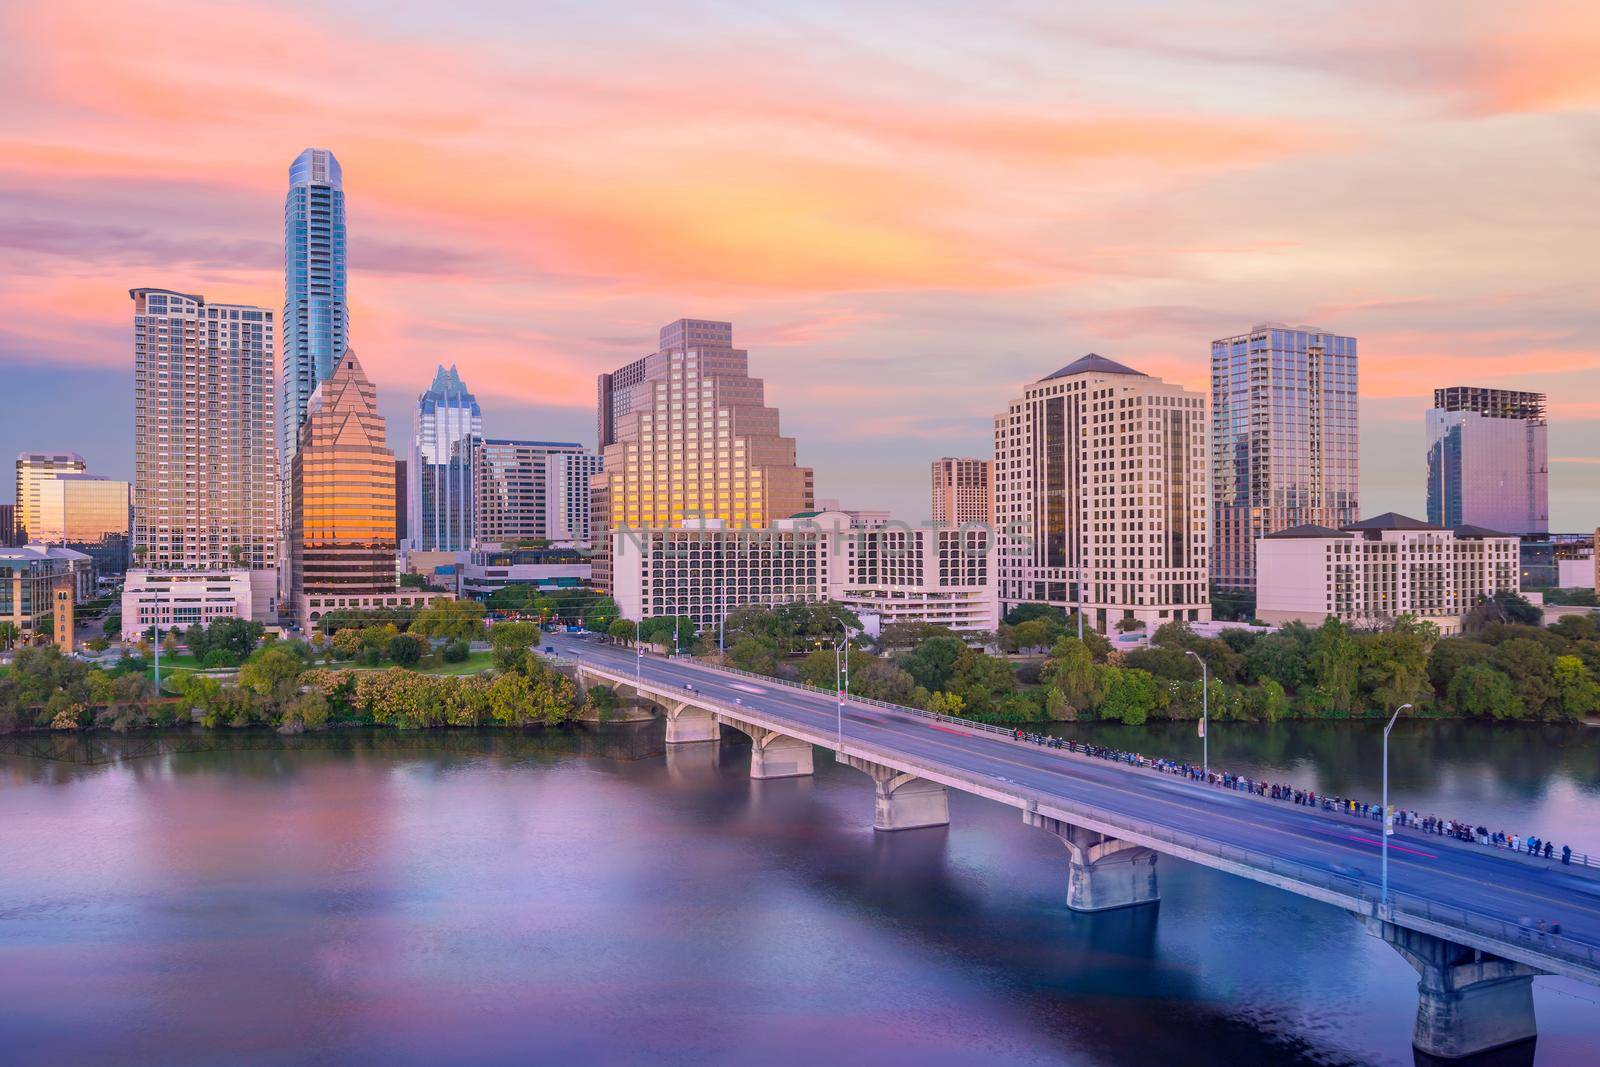 Downtown Skyline of Austin, Texas by f11photo